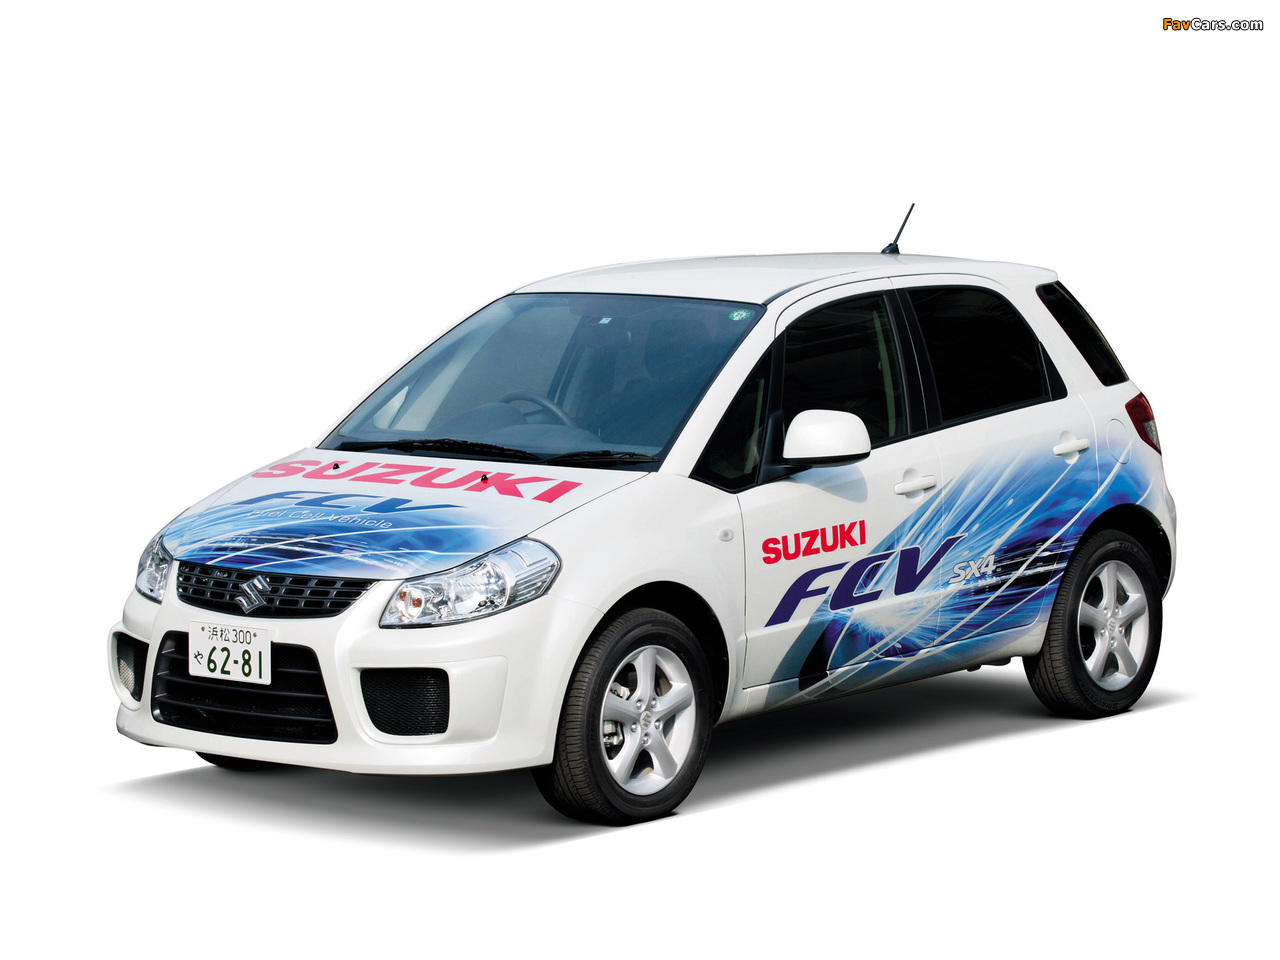 Images of Suzuki SX4 FCV Concept 2008 (1280 x 960)